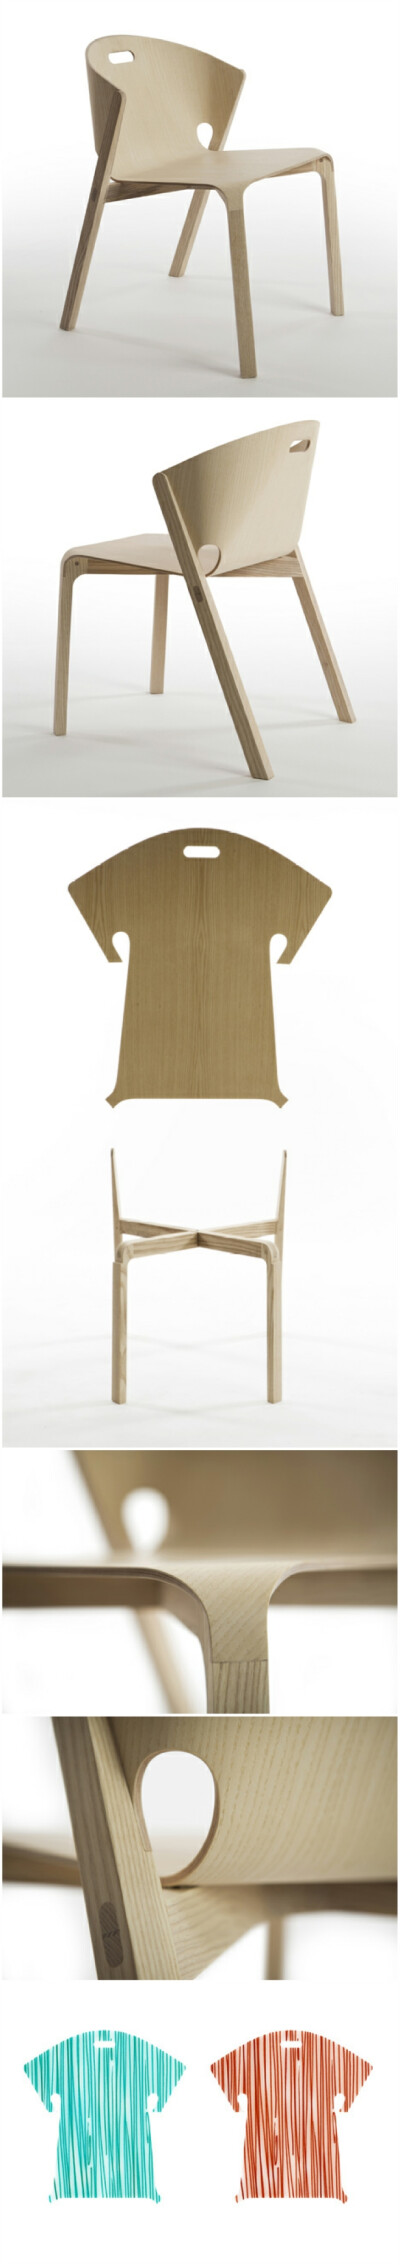 英国工业设计师Benjamin Hubert联合葡萄牙厂商De La Espada设计了一把造型独特的椅子，该椅子由一个T恤形状的靠背和一个实木框架组成。胶合板靠背边缘的凸出部分正好插入到白蜡木实木椅腿的凹槽里面，形成平滑的表面…